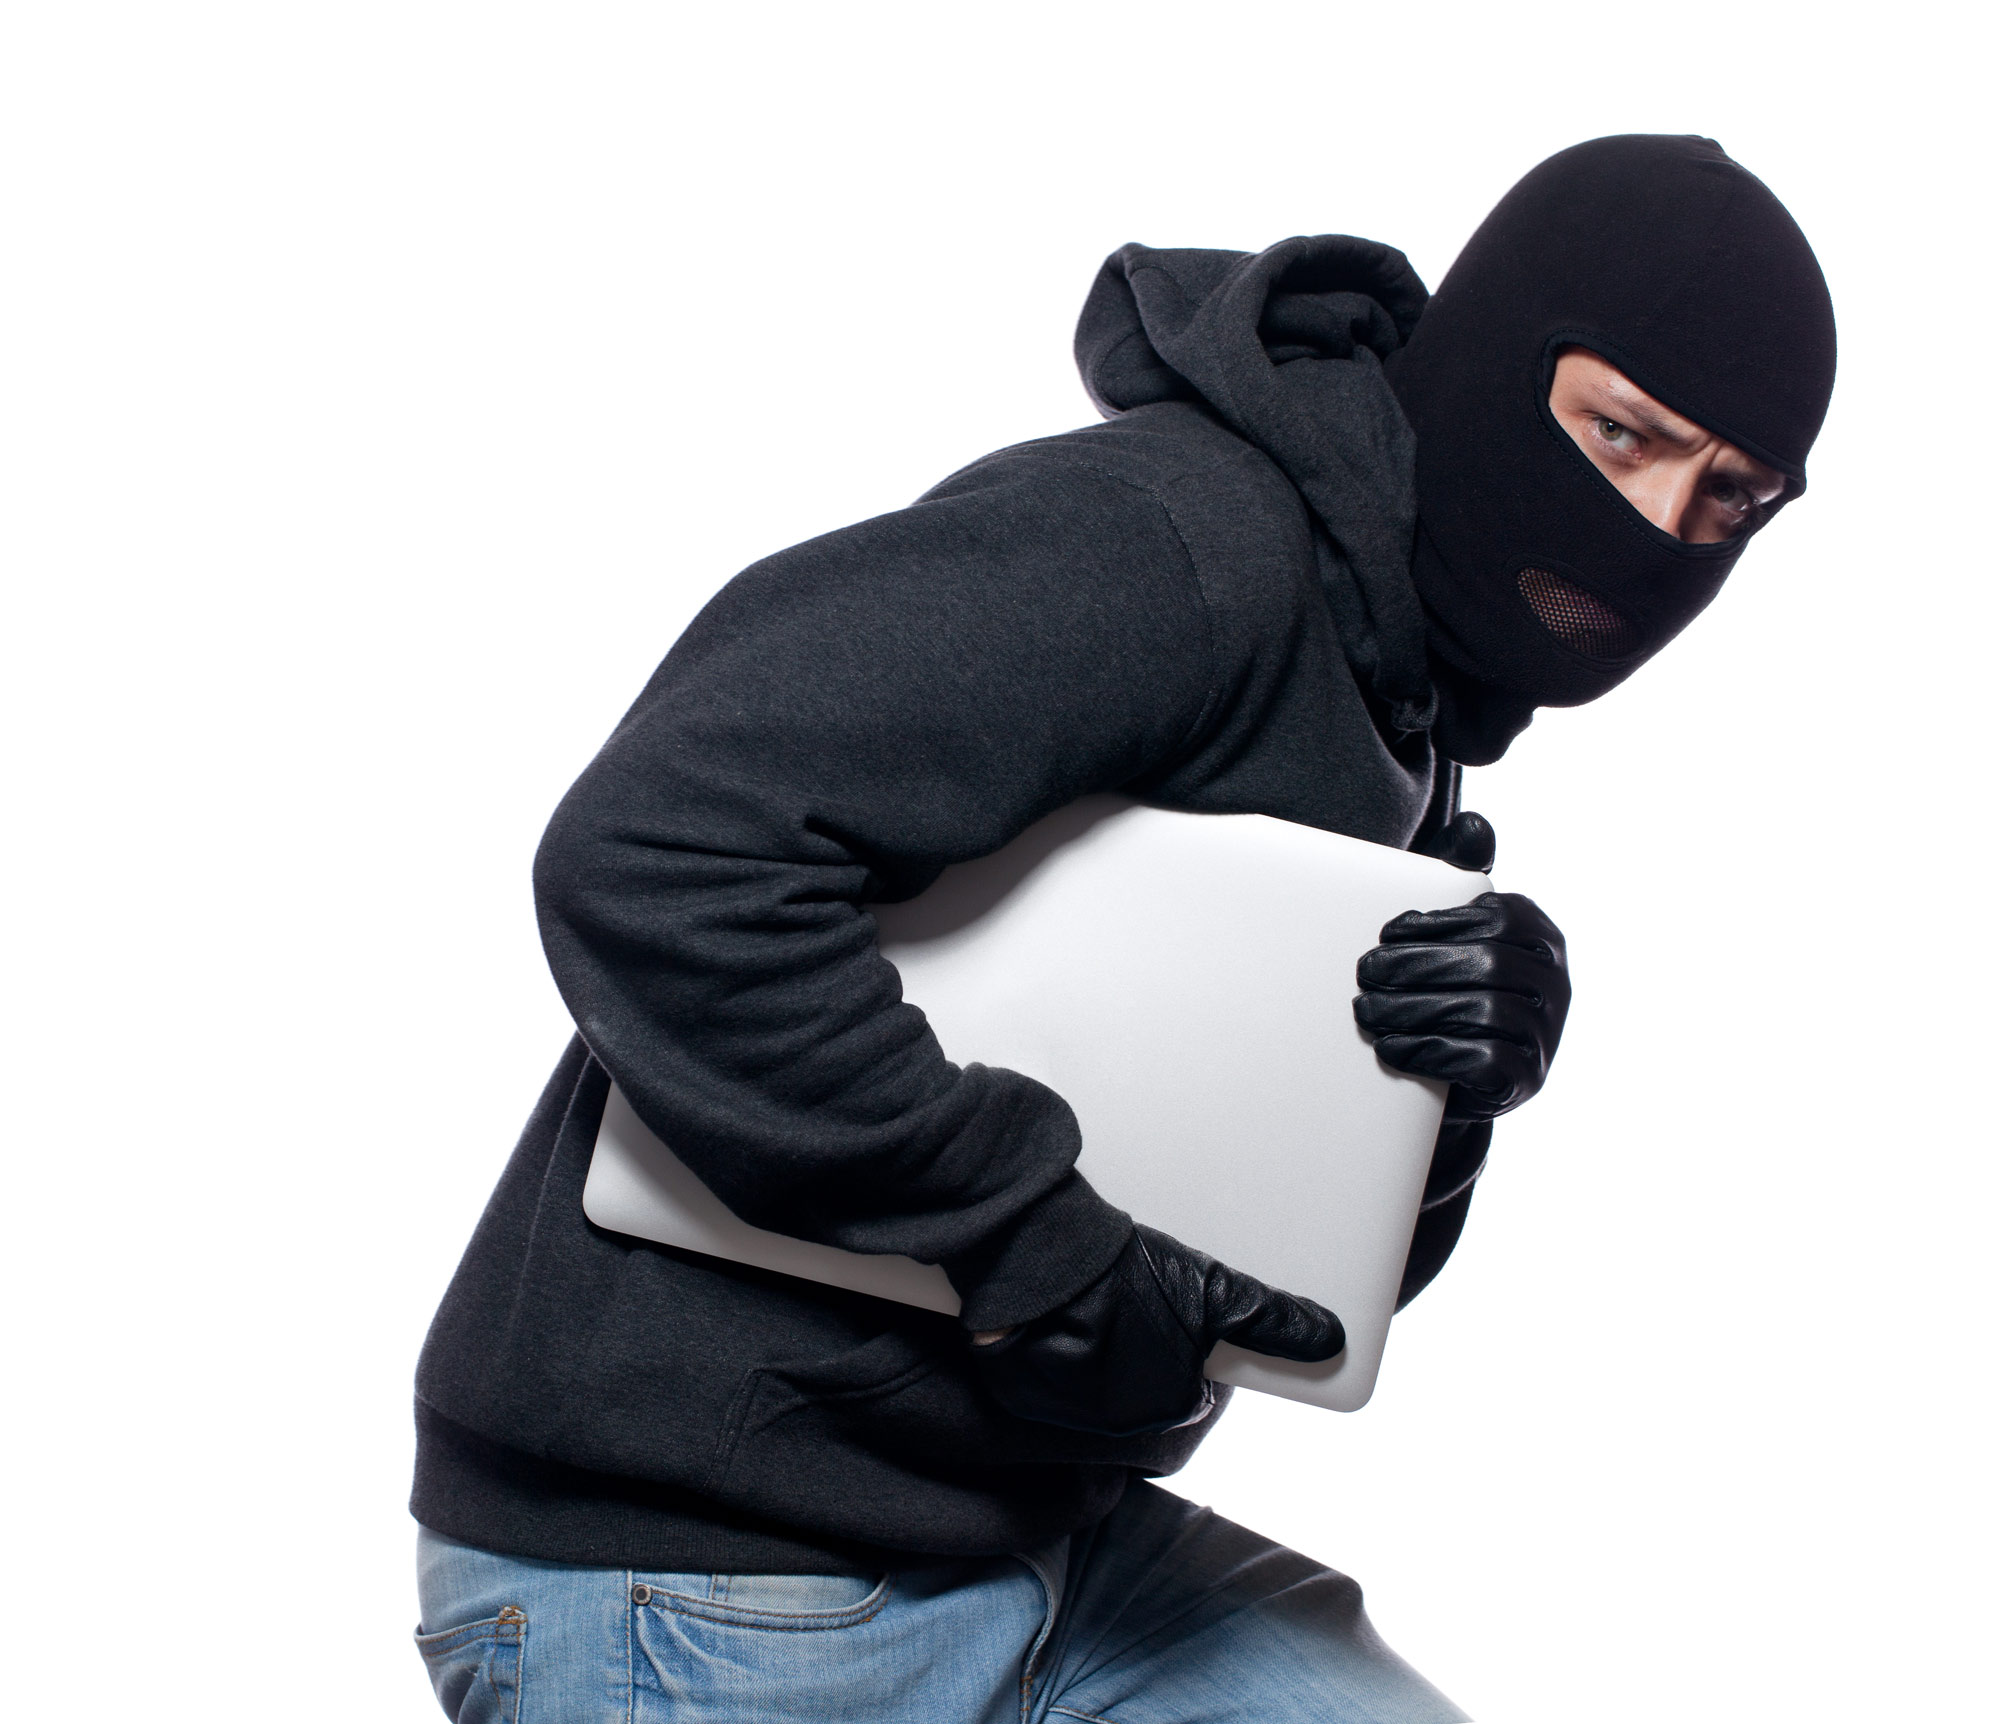 Laptop thief